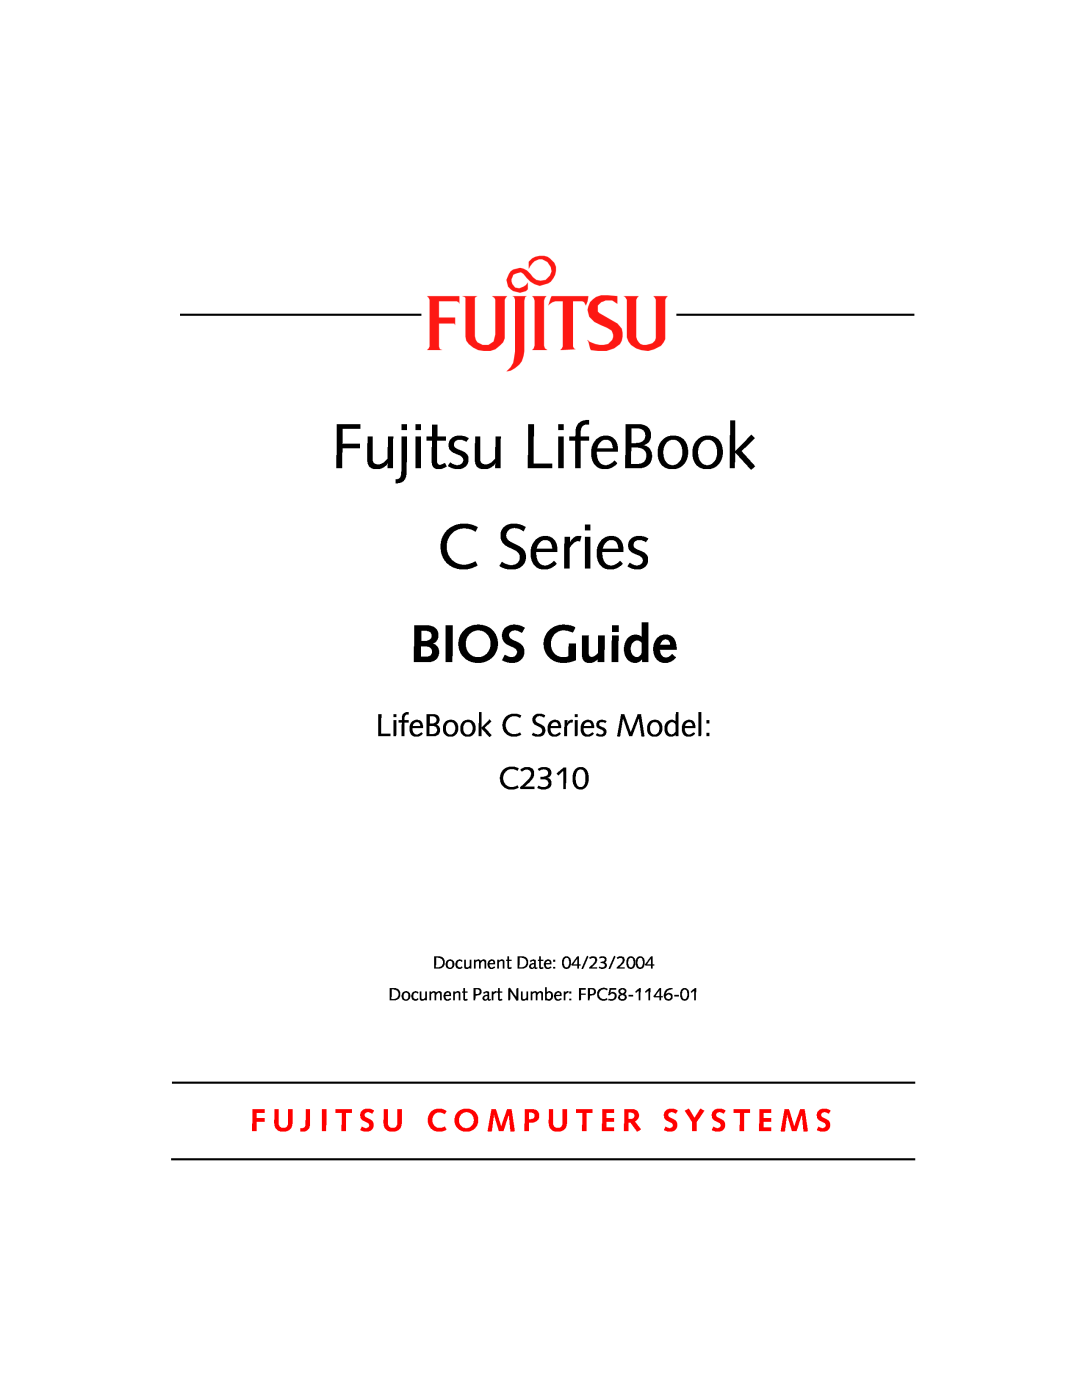 Fujitsu Siemens Computers manual Fujitsu LifeBook, BIOS Guide, LifeBook C Series Model C2310 